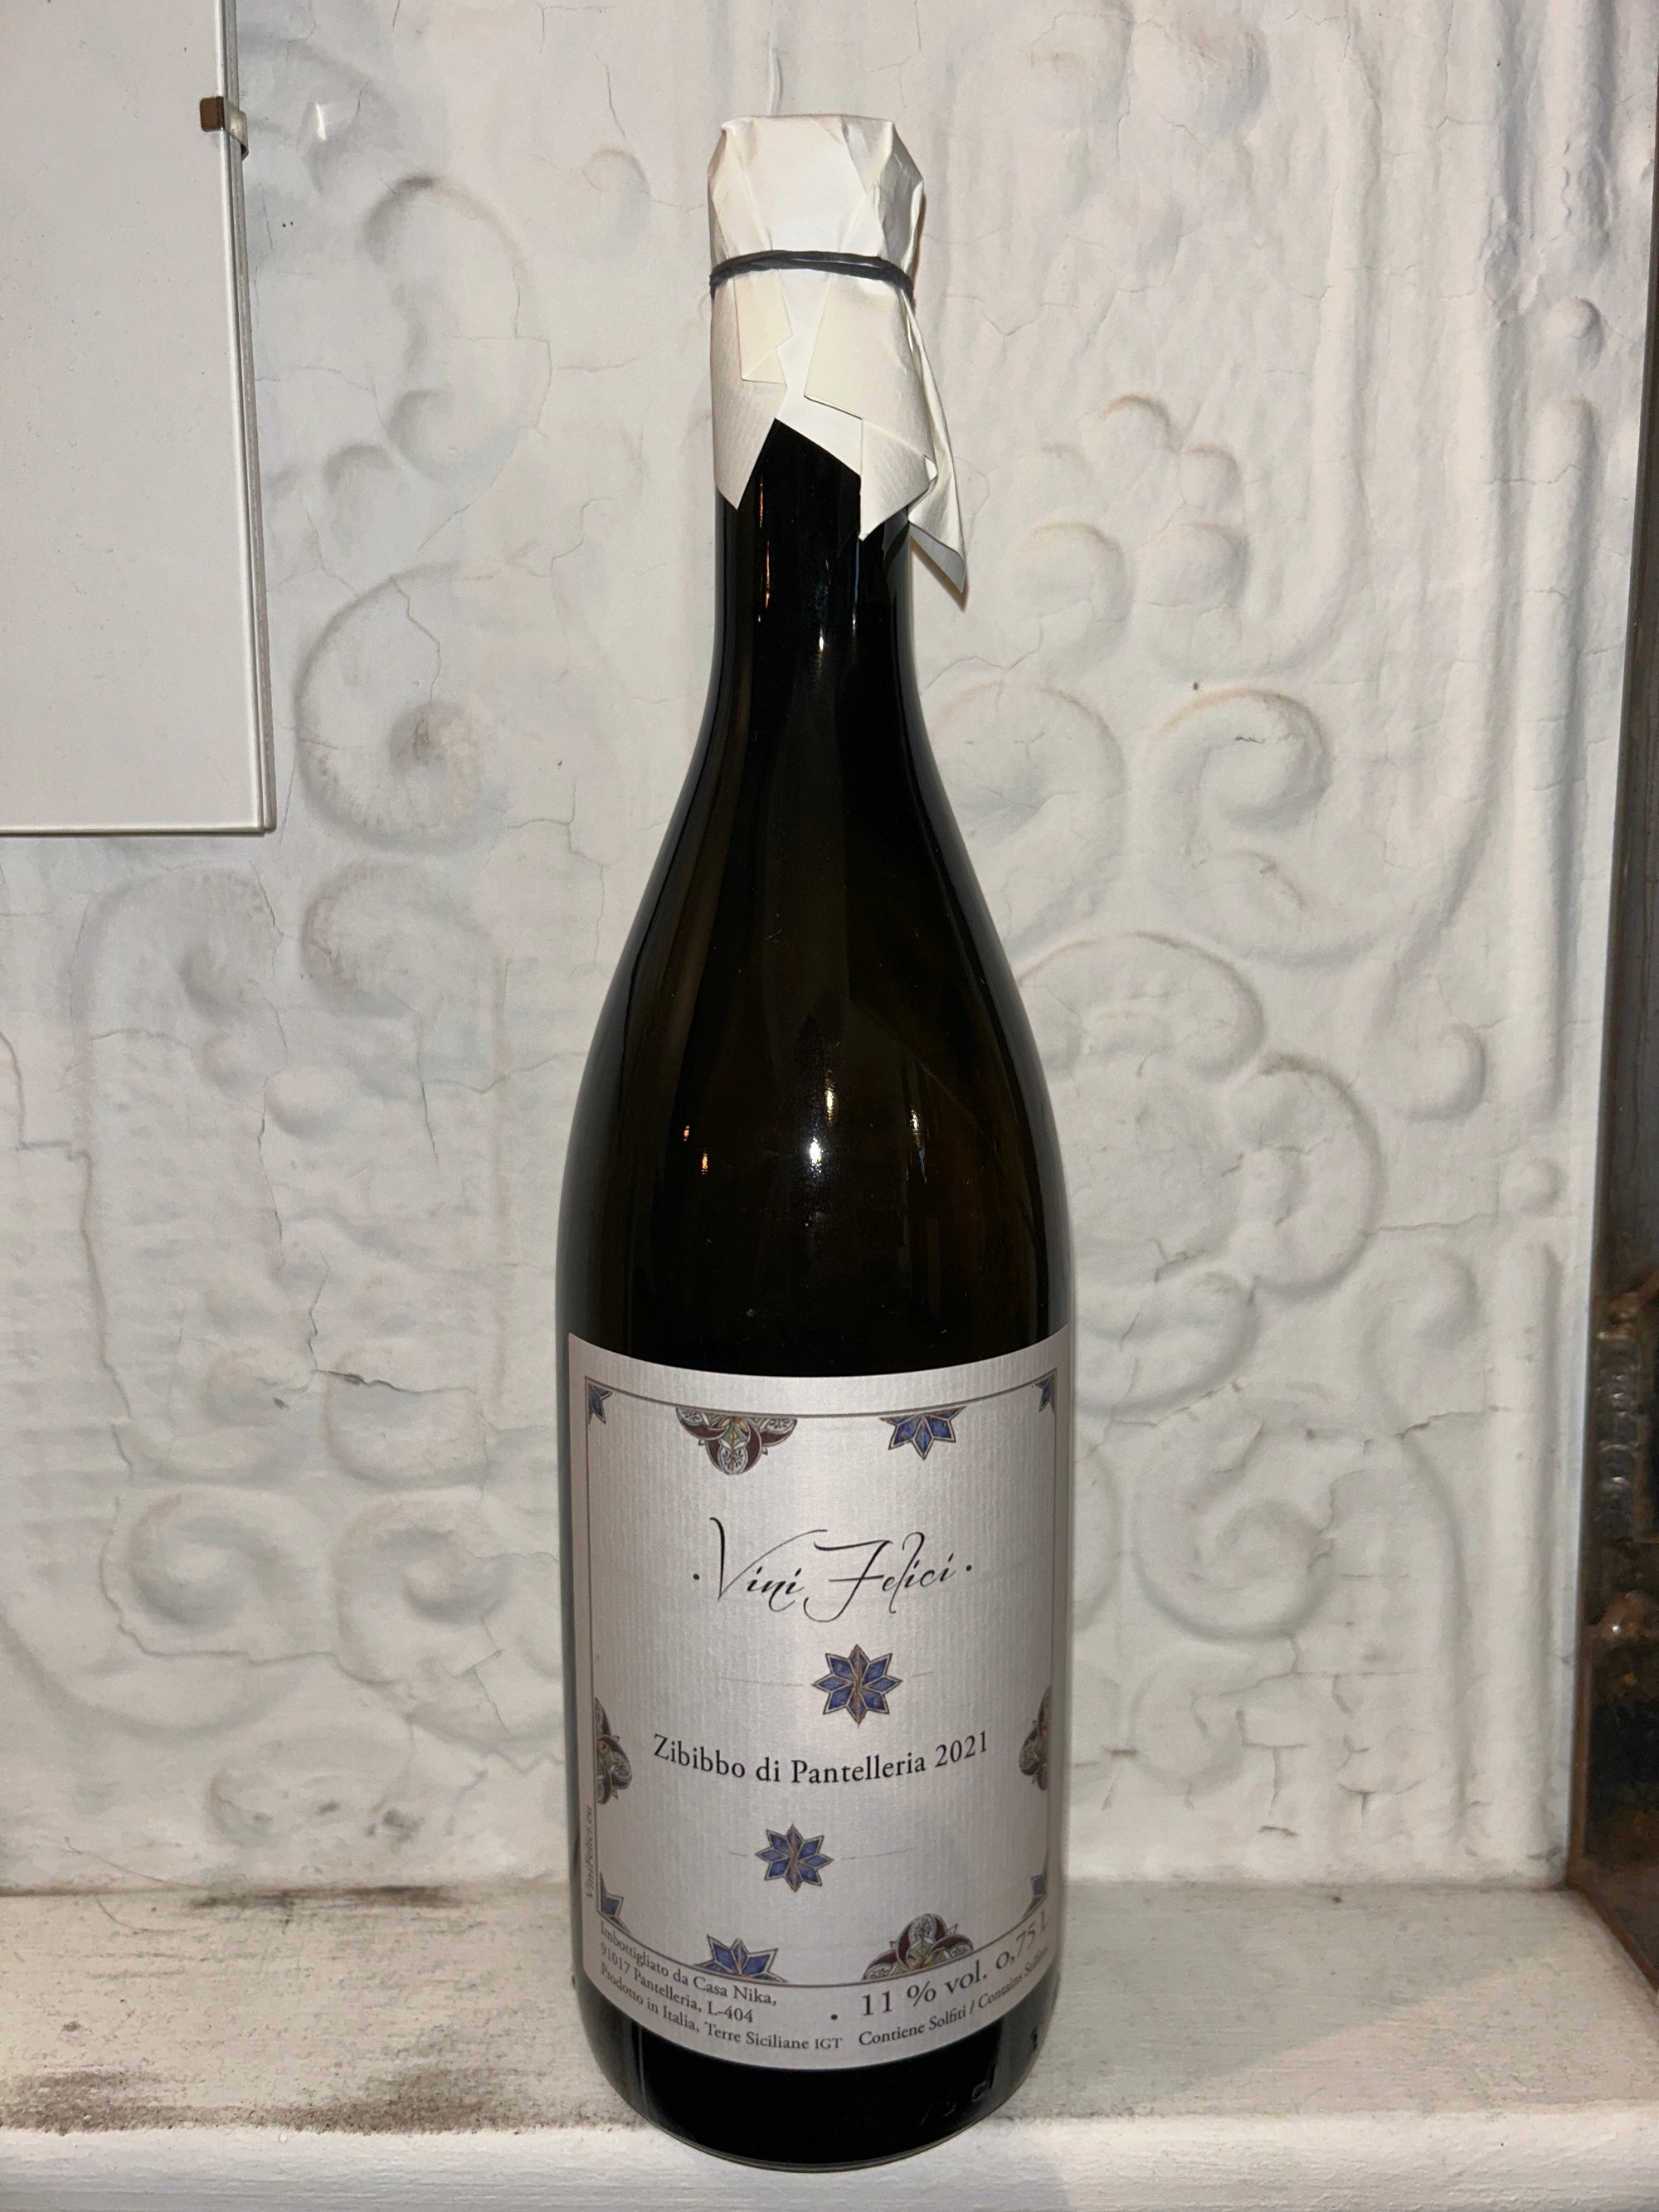 Zibibbo di Pantelleria, Vini Felice 2021 (Sicily, Italy)-Wine-Bibber & Bell